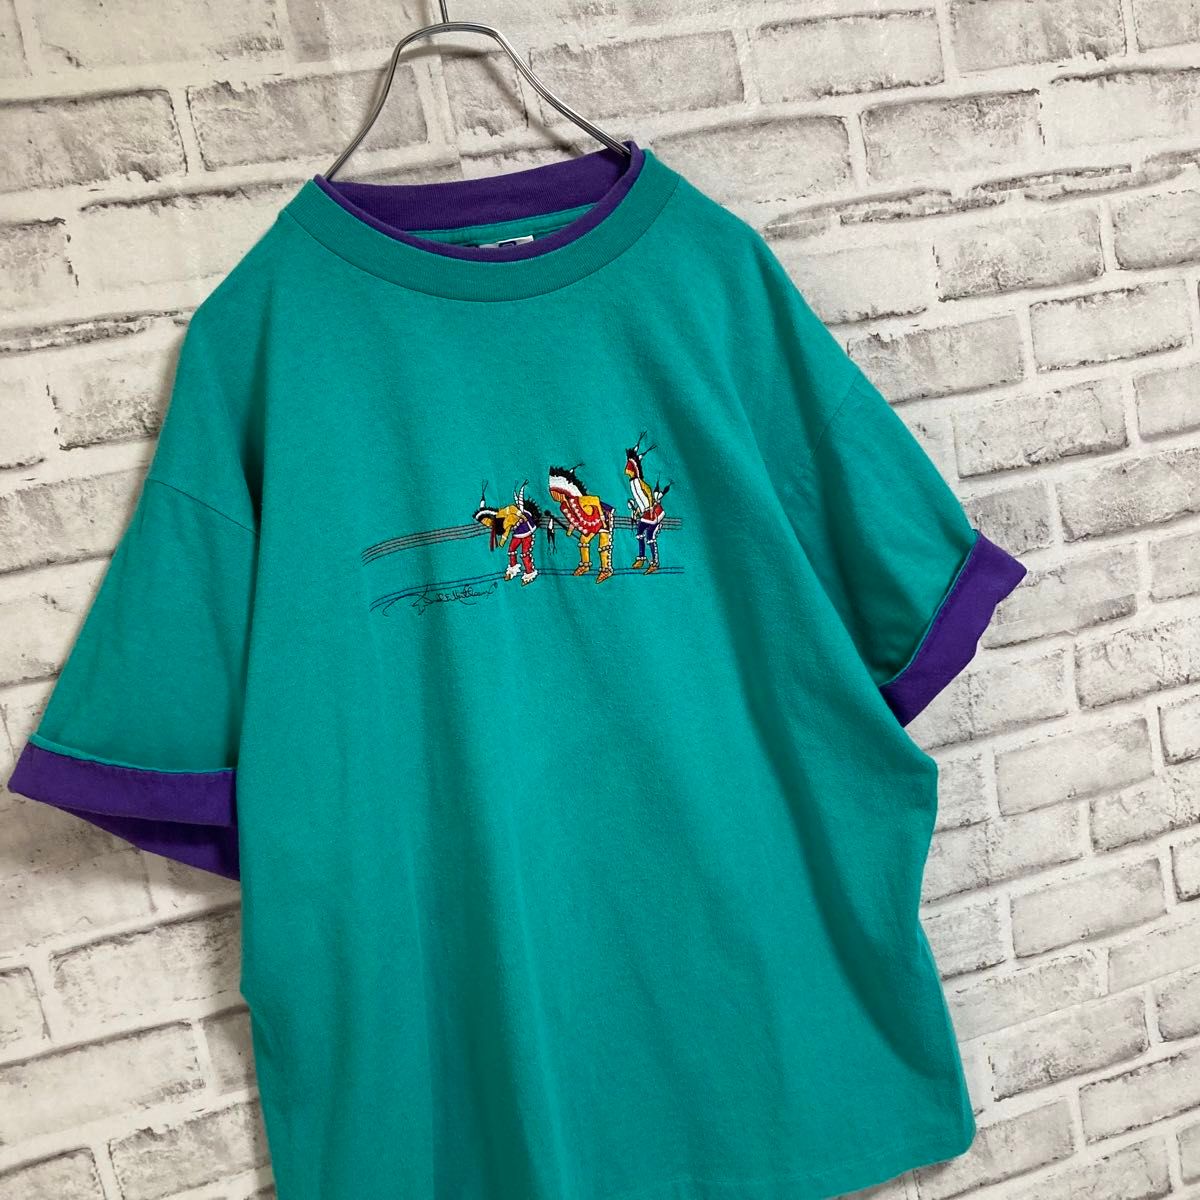 激レアレイヤードTee★USA製 リンガー ライク Tシャツ 90s 刺繍 ツートン vintage アメリカ USA 古着